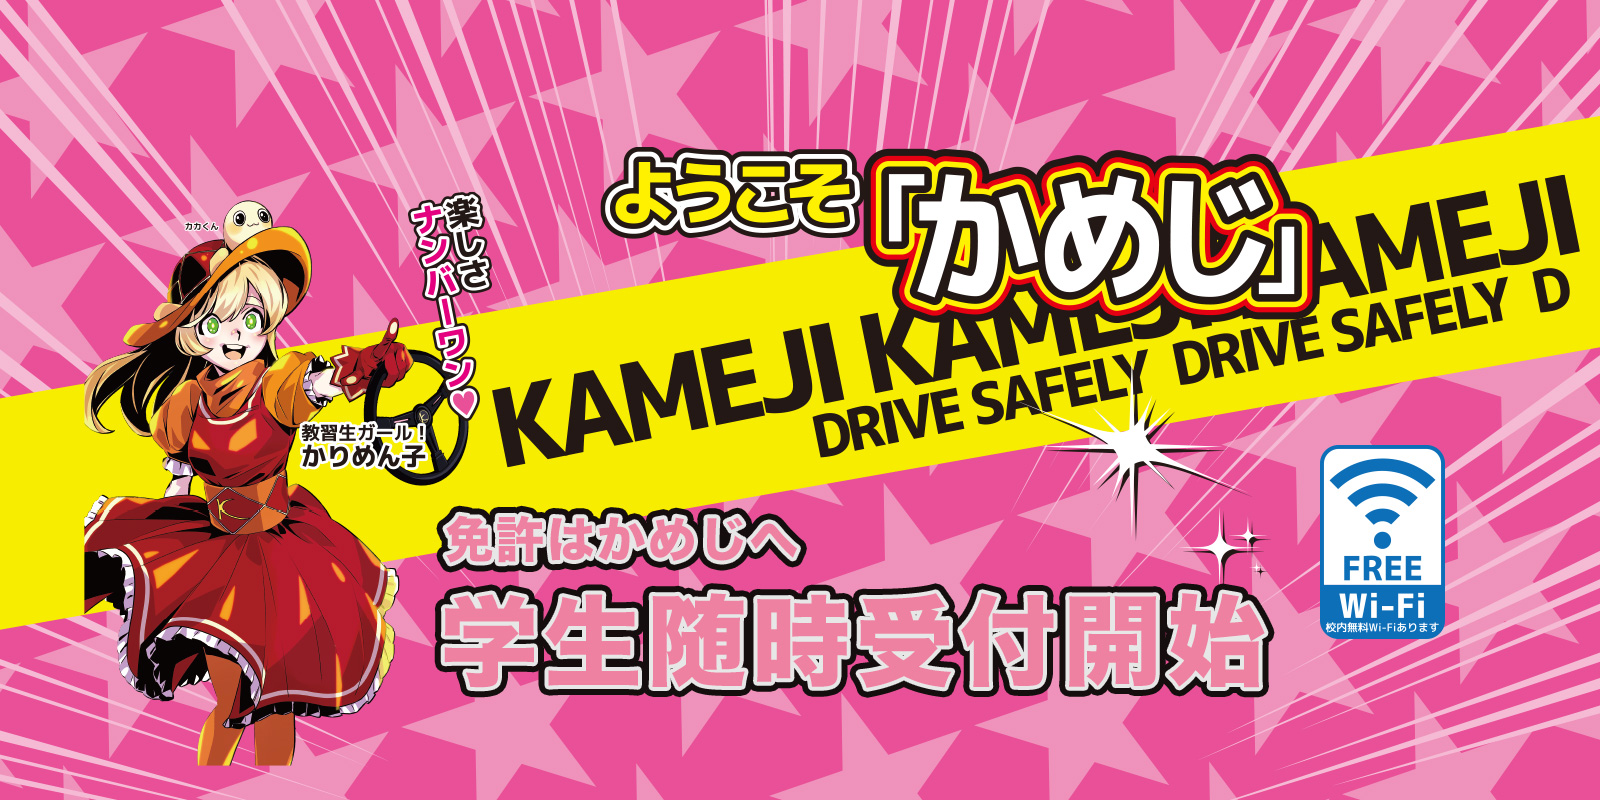 亀田自動車では免許をとる高校生を応援します。学生随時受付開始